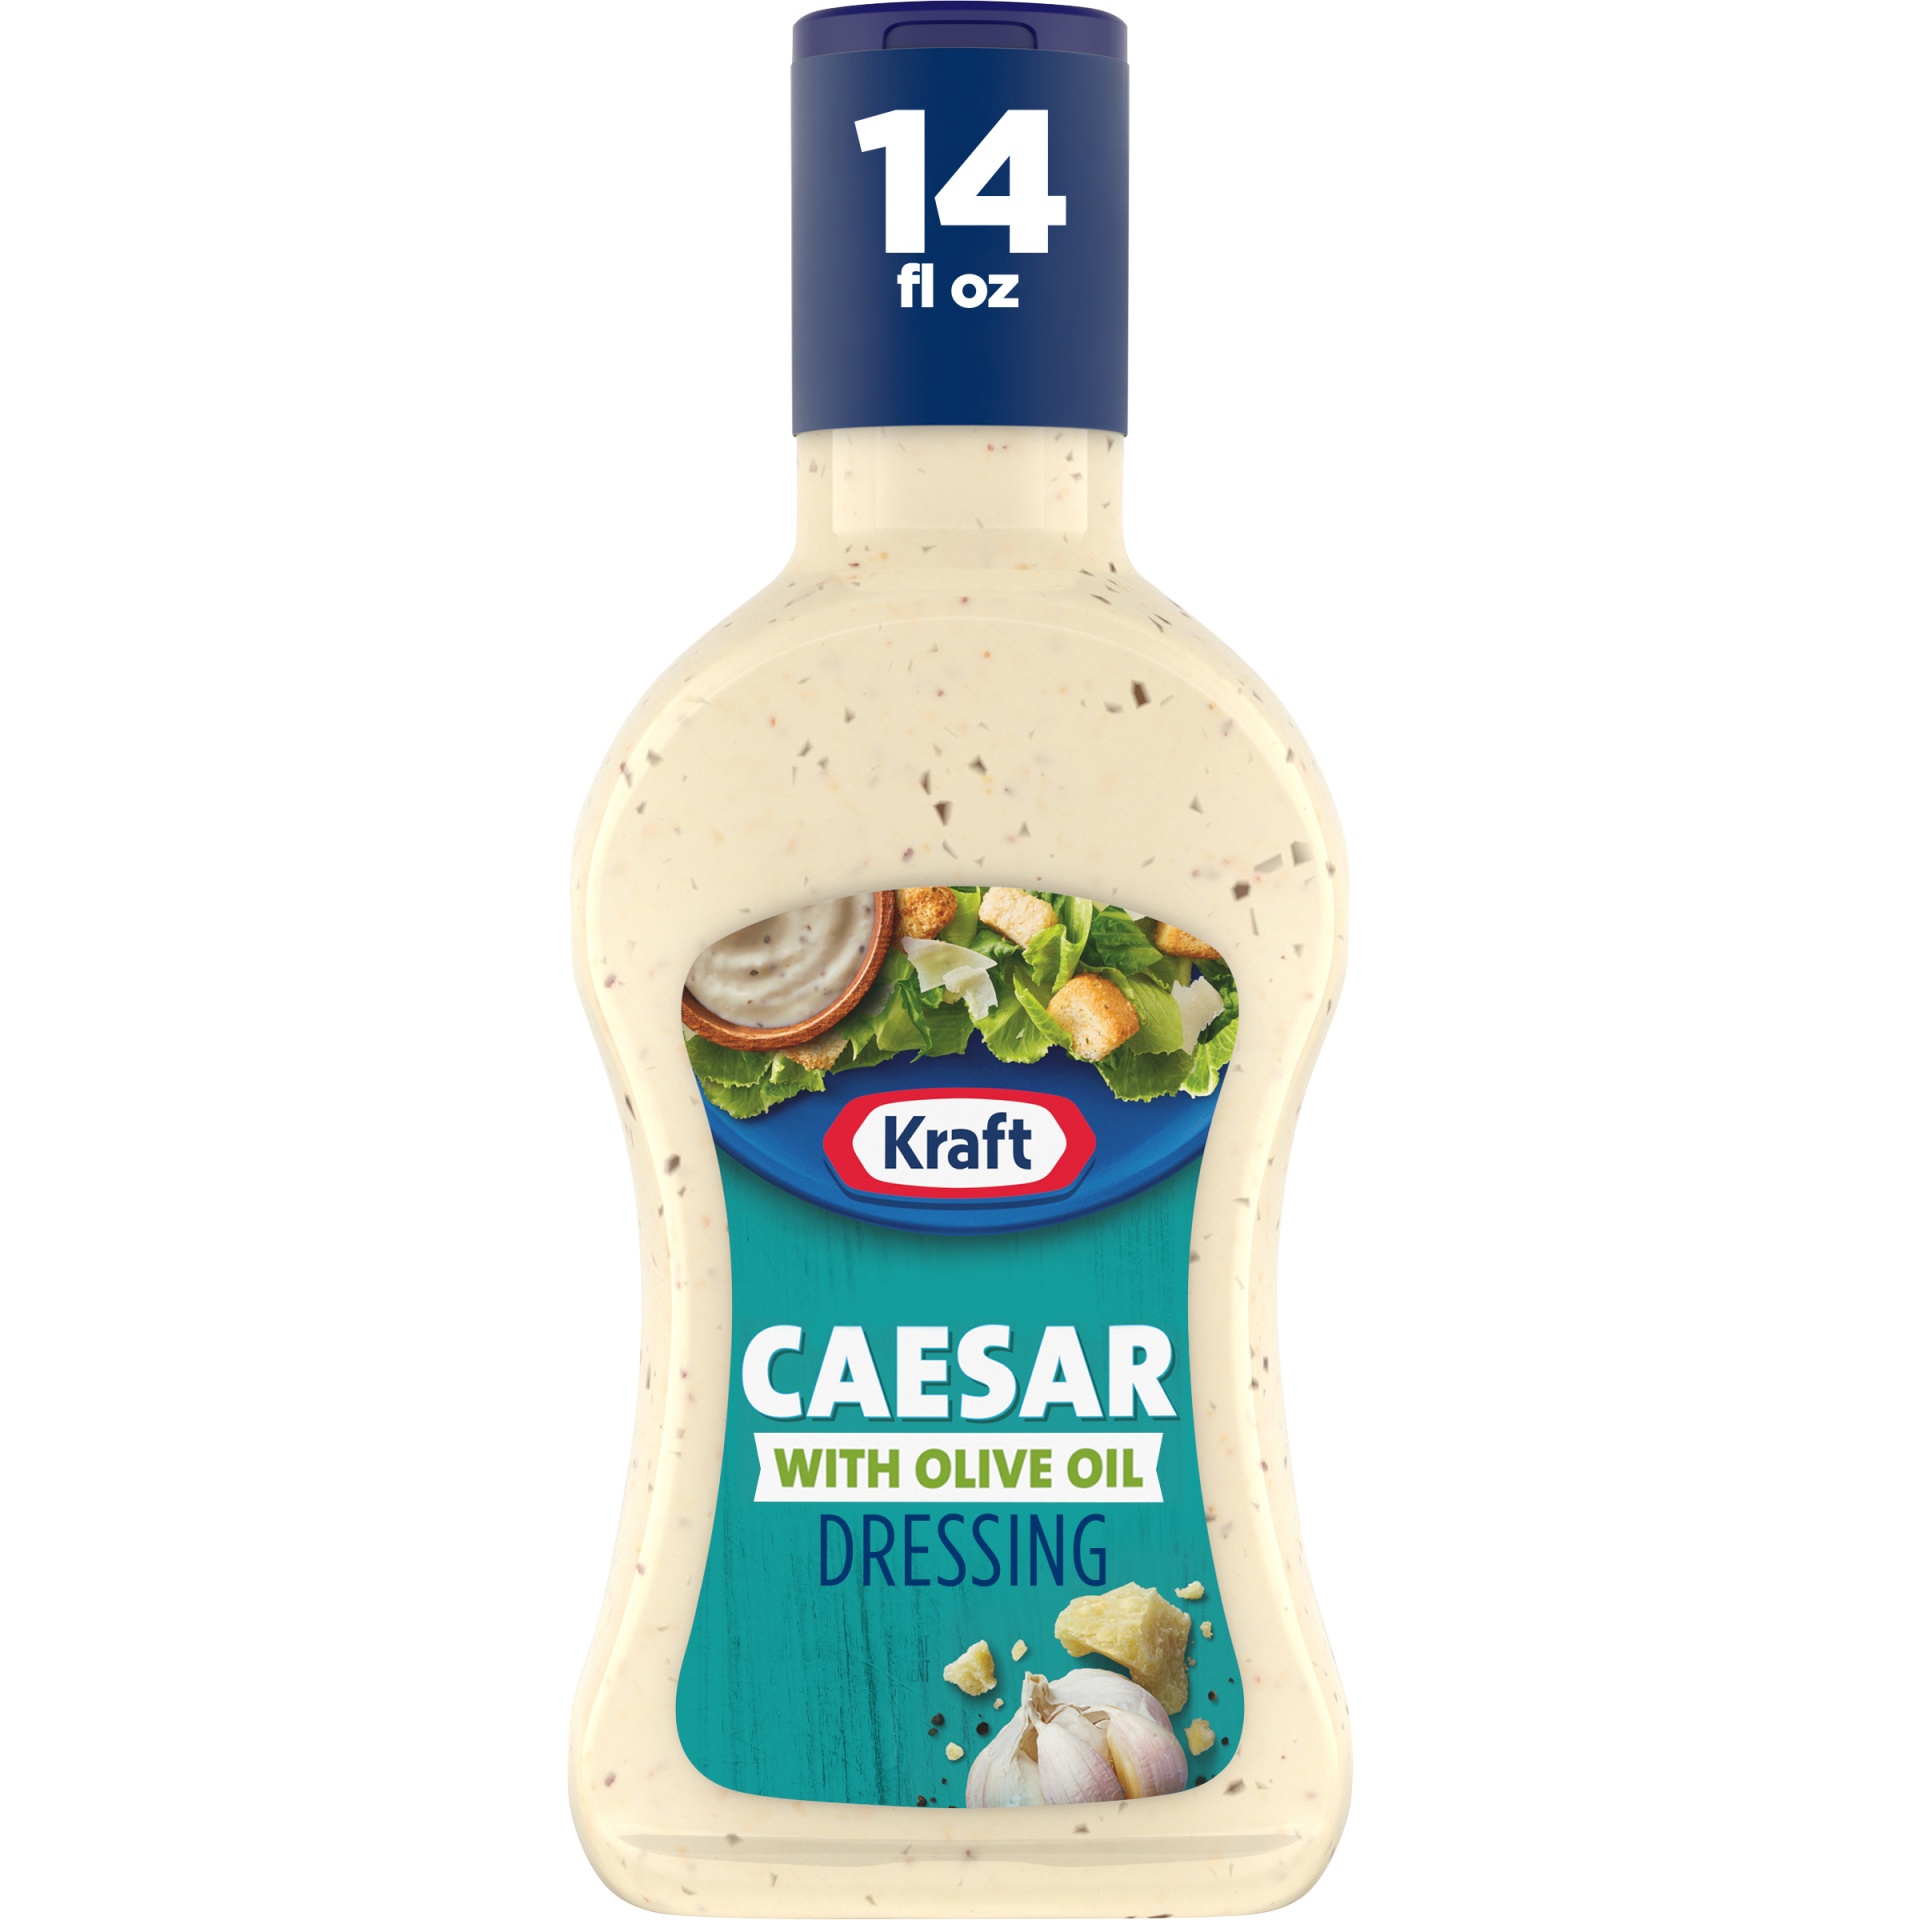 slide 1 of 2, Kraft Caesar Salad Dressing with Olive Oil Bottle, 14 fl oz